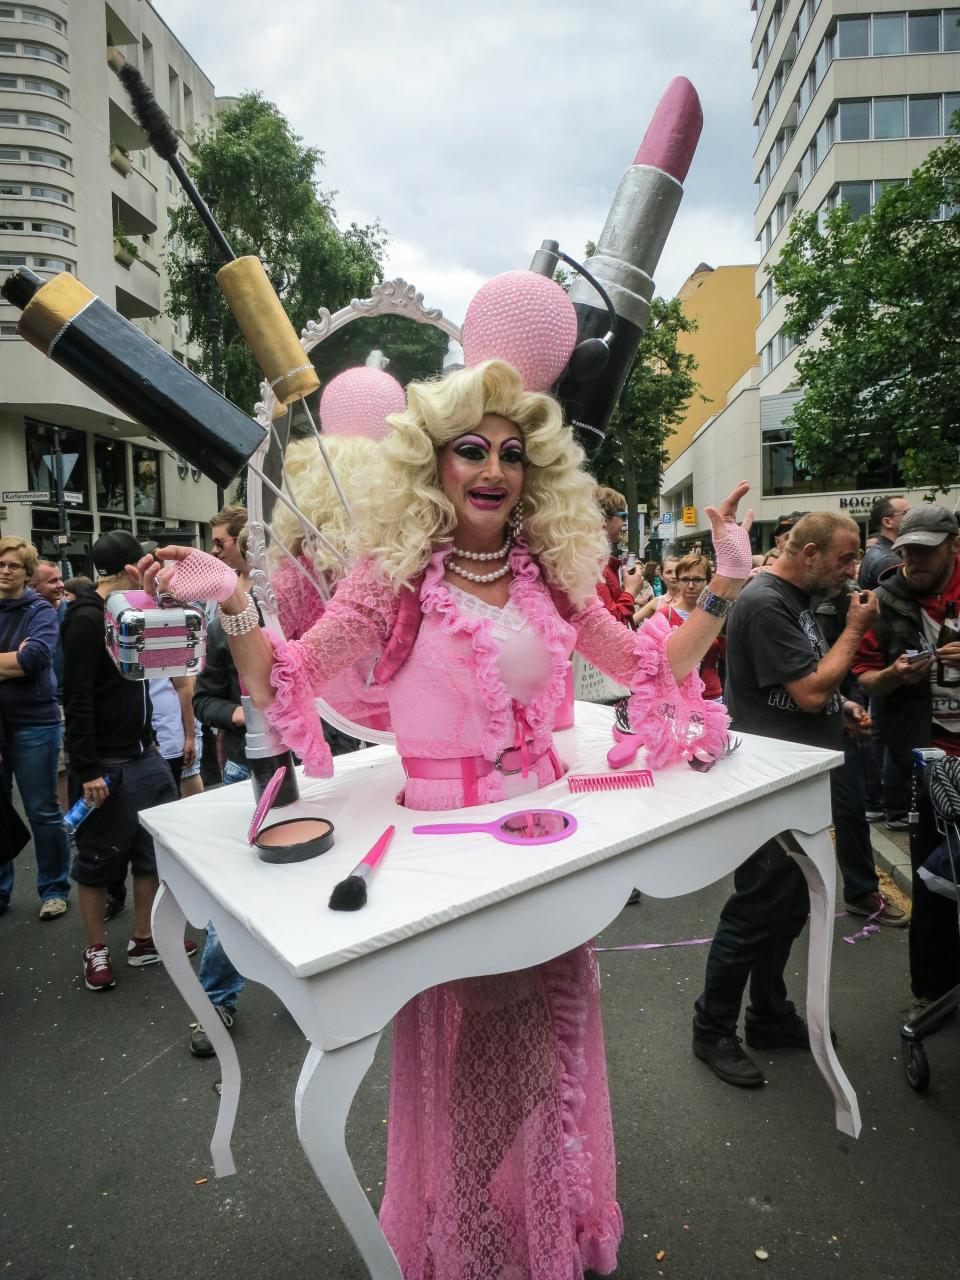 vanity streets pink people mirror makeup lipstick dress dragqueen crowd comb brush blonde 